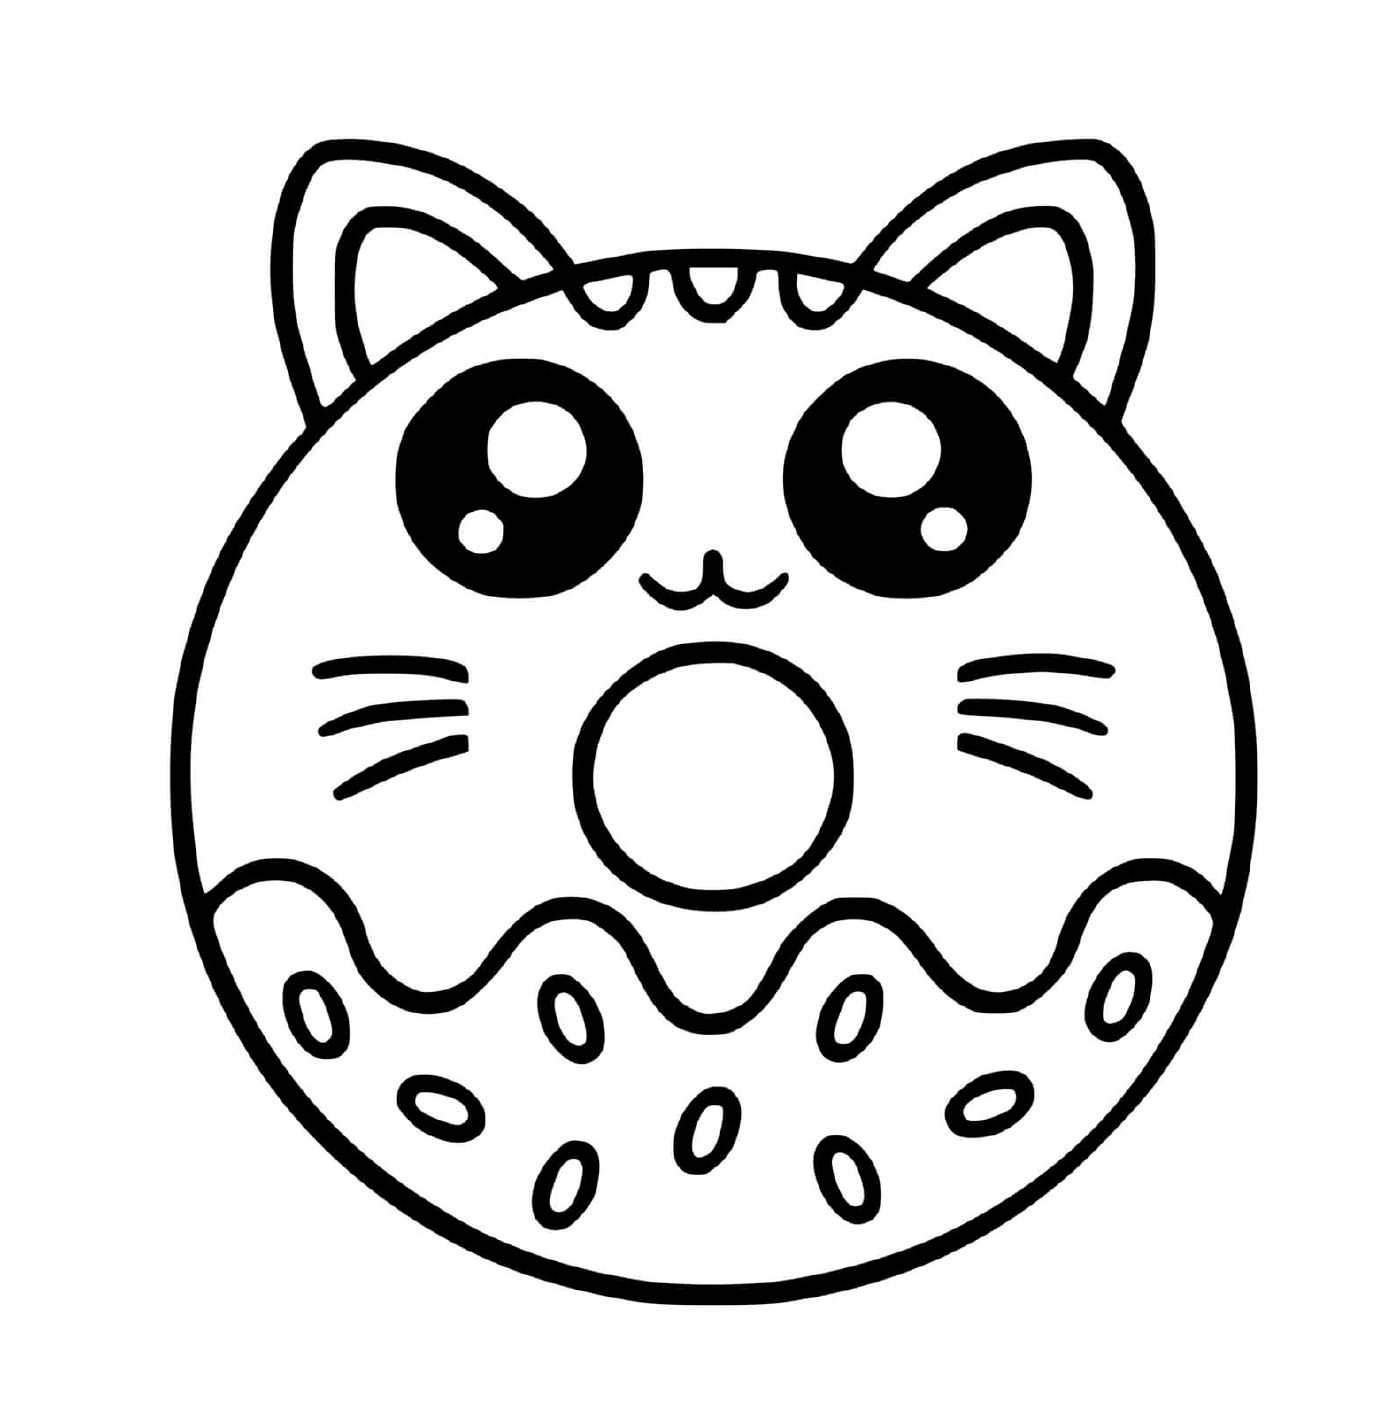  Um donut com um rosto de gato 